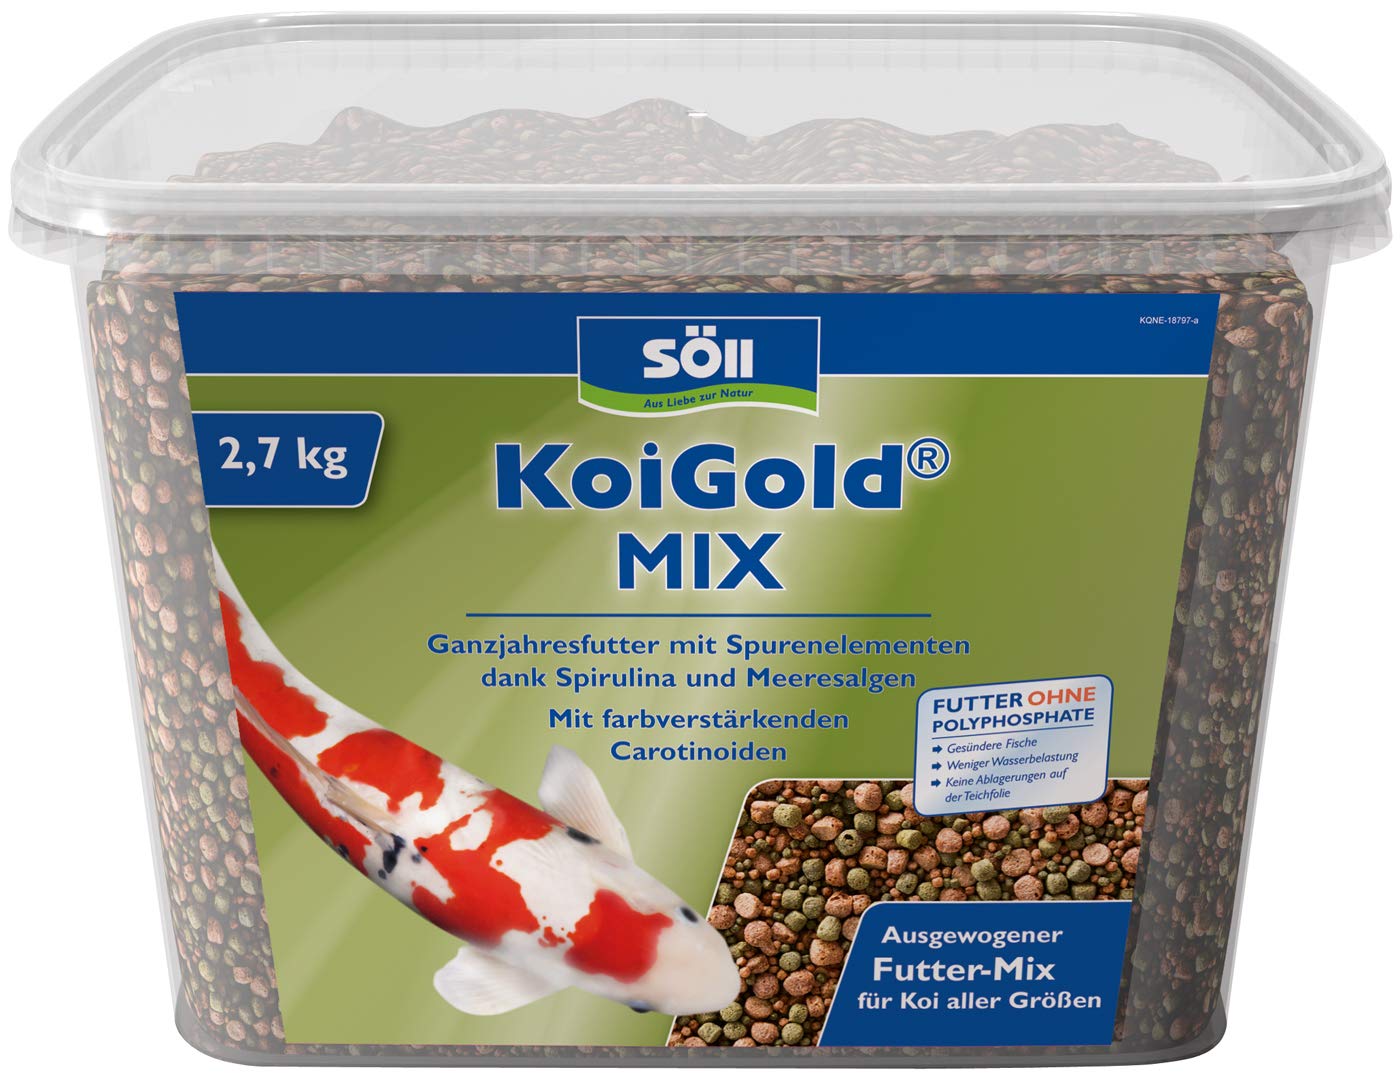 Söll KoiGold Mix, 7 l - Koifutter mit Spurenelementen und Vitaminen zur vollwertigen Ernährung von Koi im Koiteich, Gartenteich, Fischteich